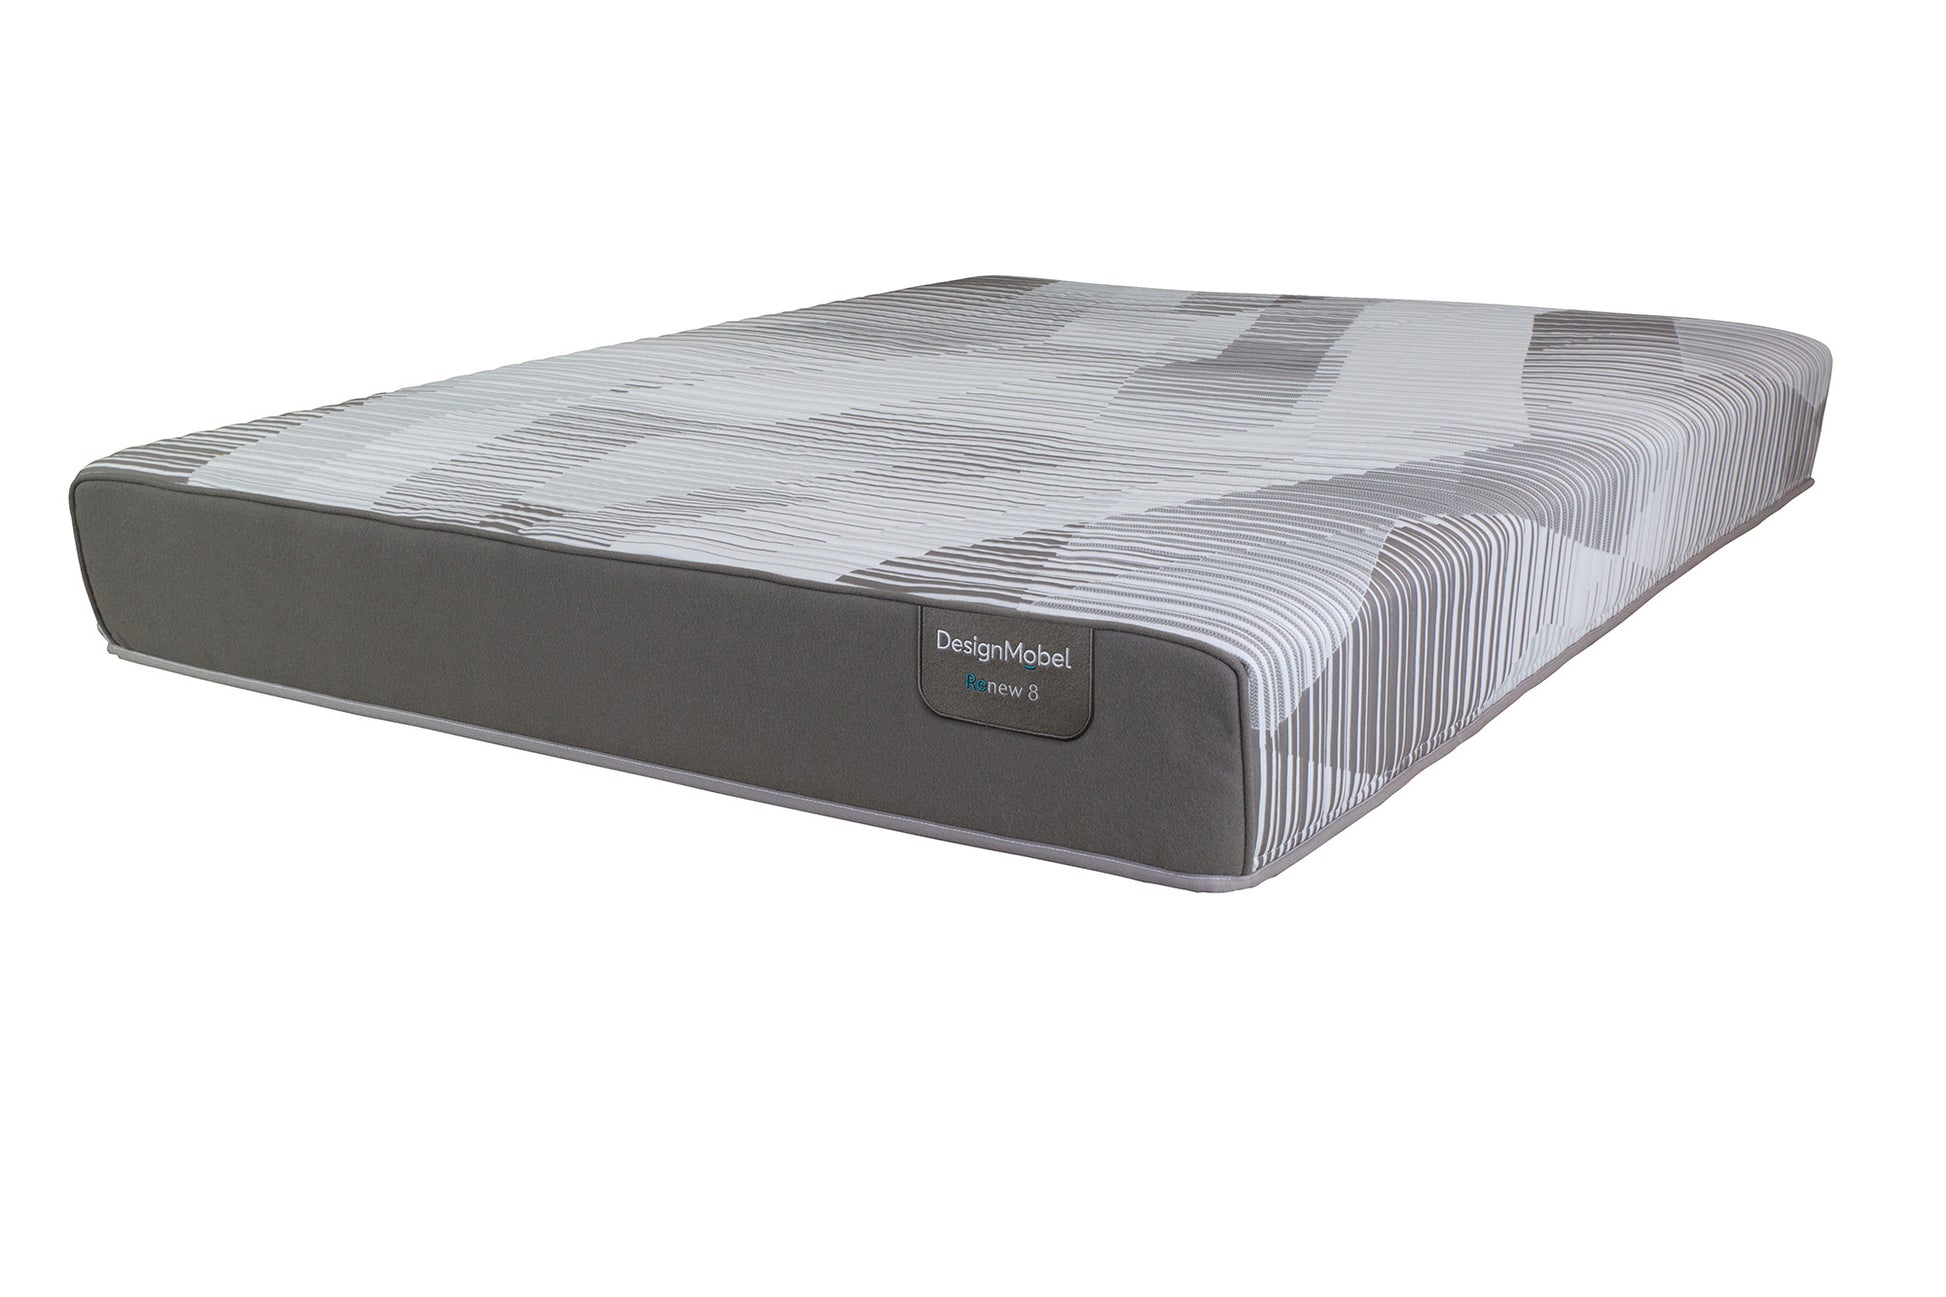 renew8-super-king-mattress-2